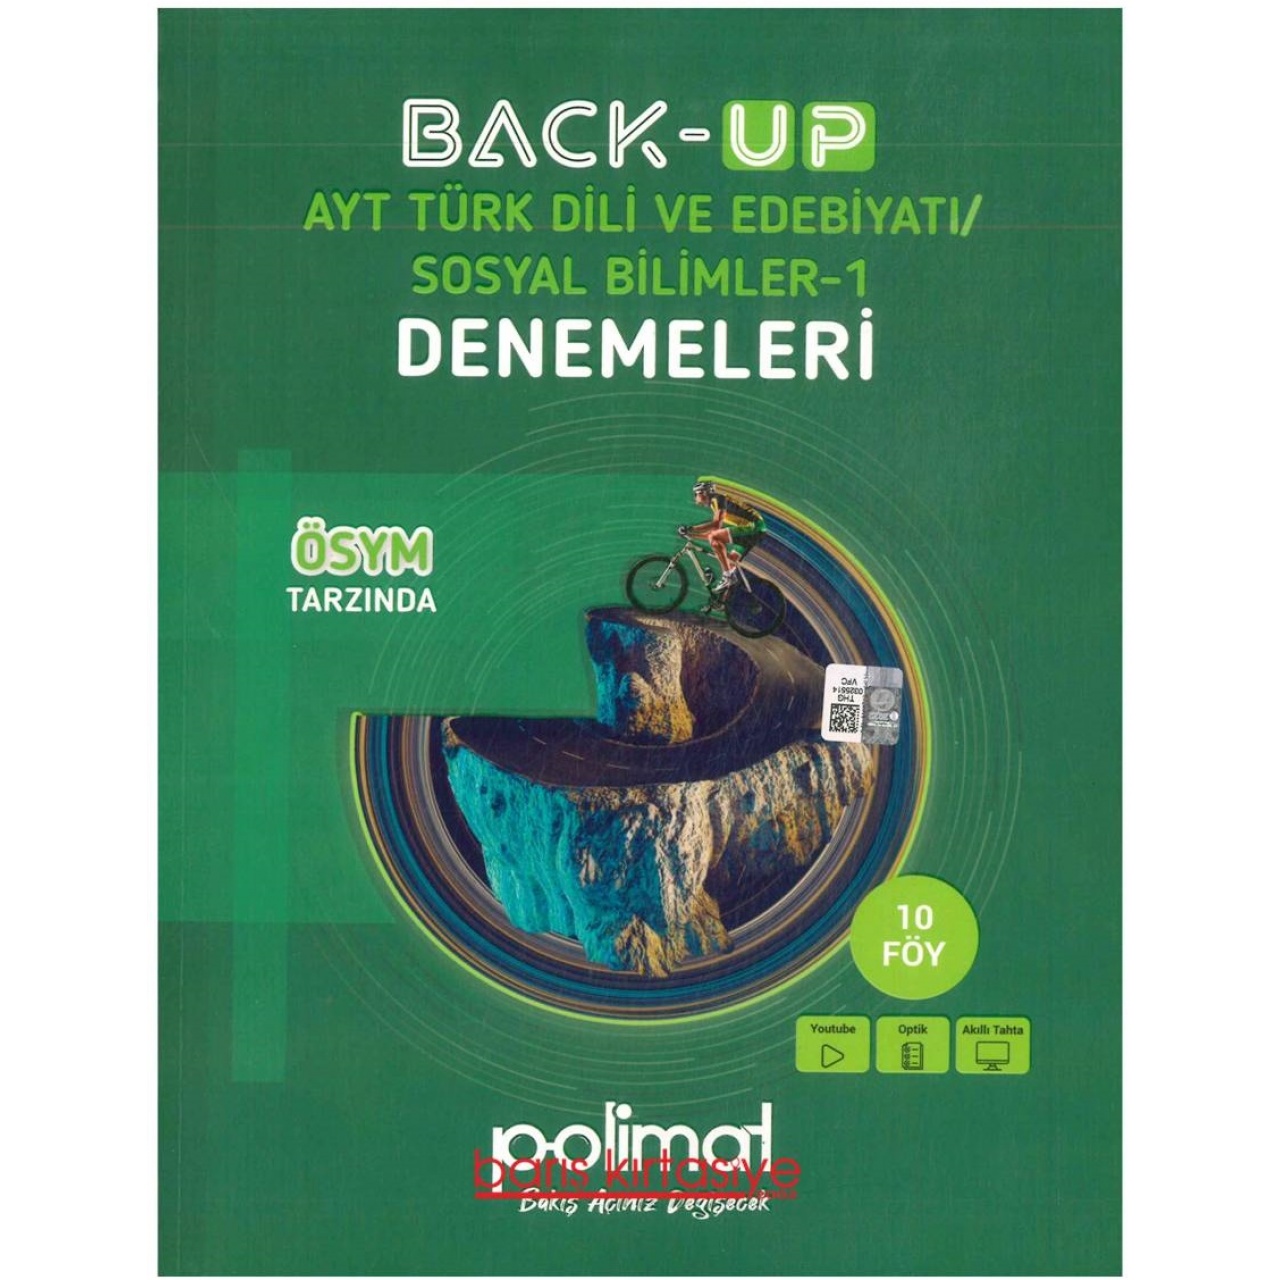 Back-Up AYT Türk Dili ve Edebiyatı / Sosyal Bilimler-1 Denemeleri Polimat Yayınları